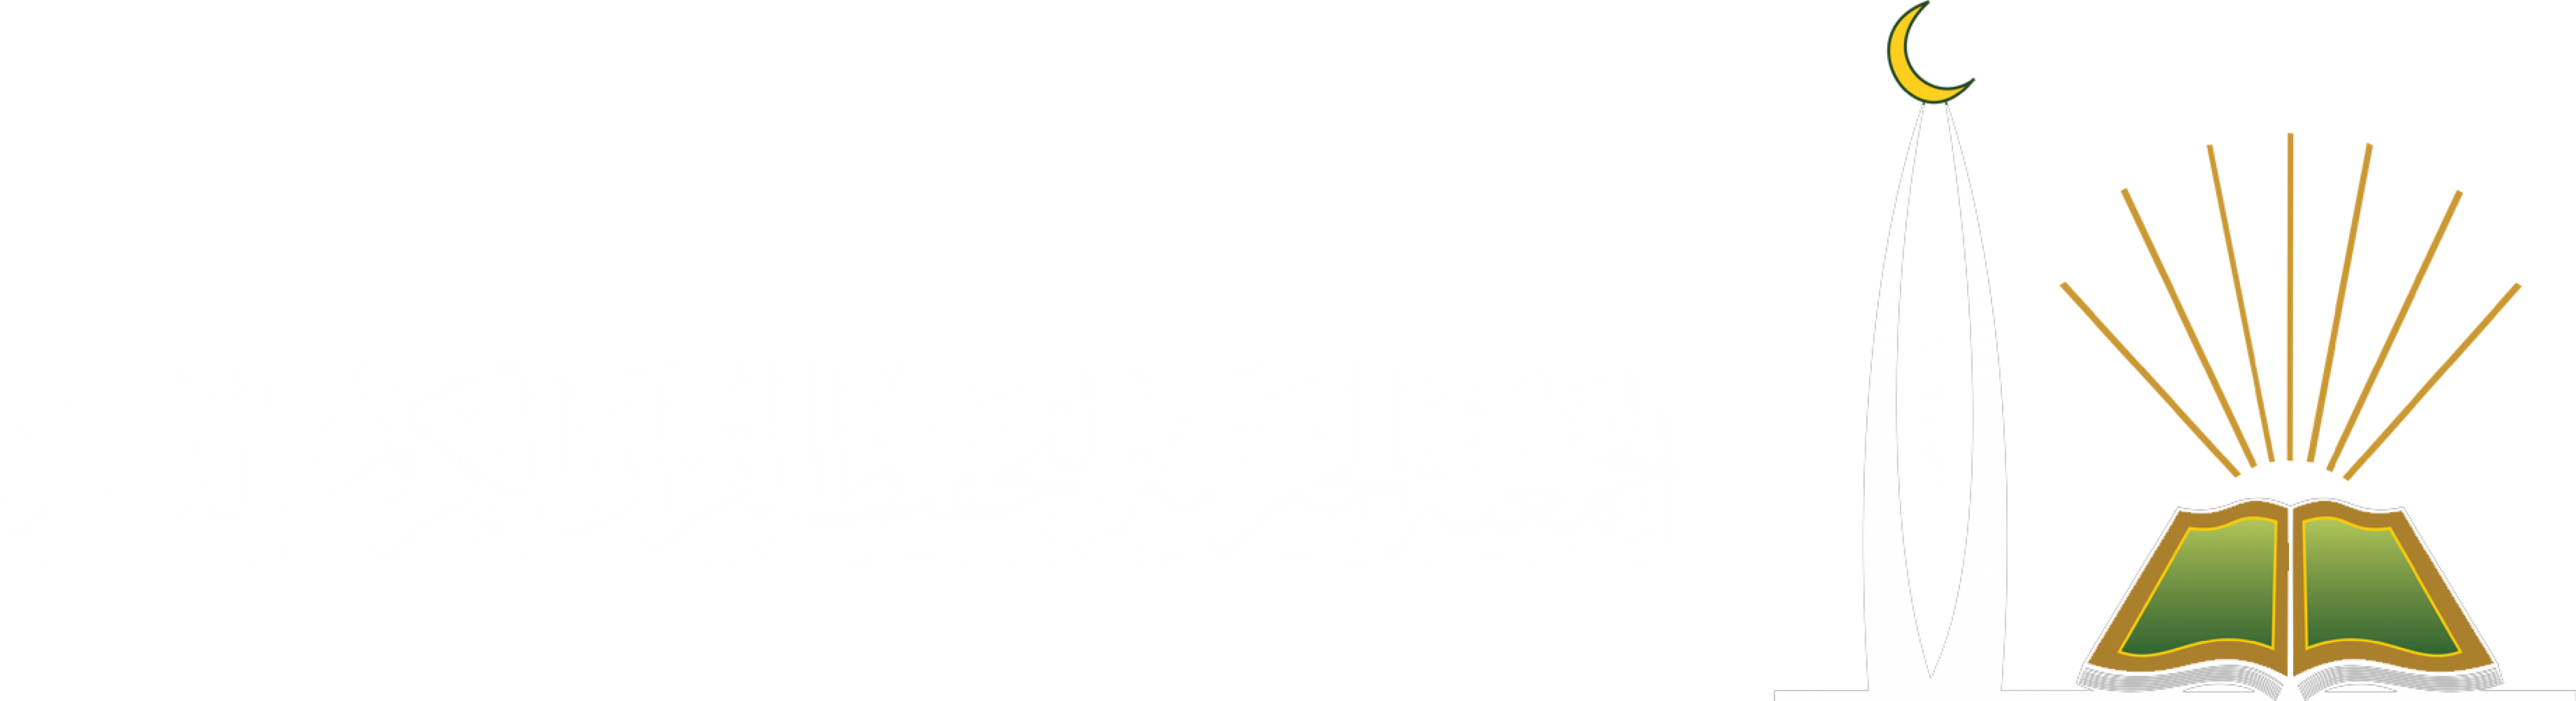 الجمعية الخيرية لتحفيظ القرآن الكريم بالدلم